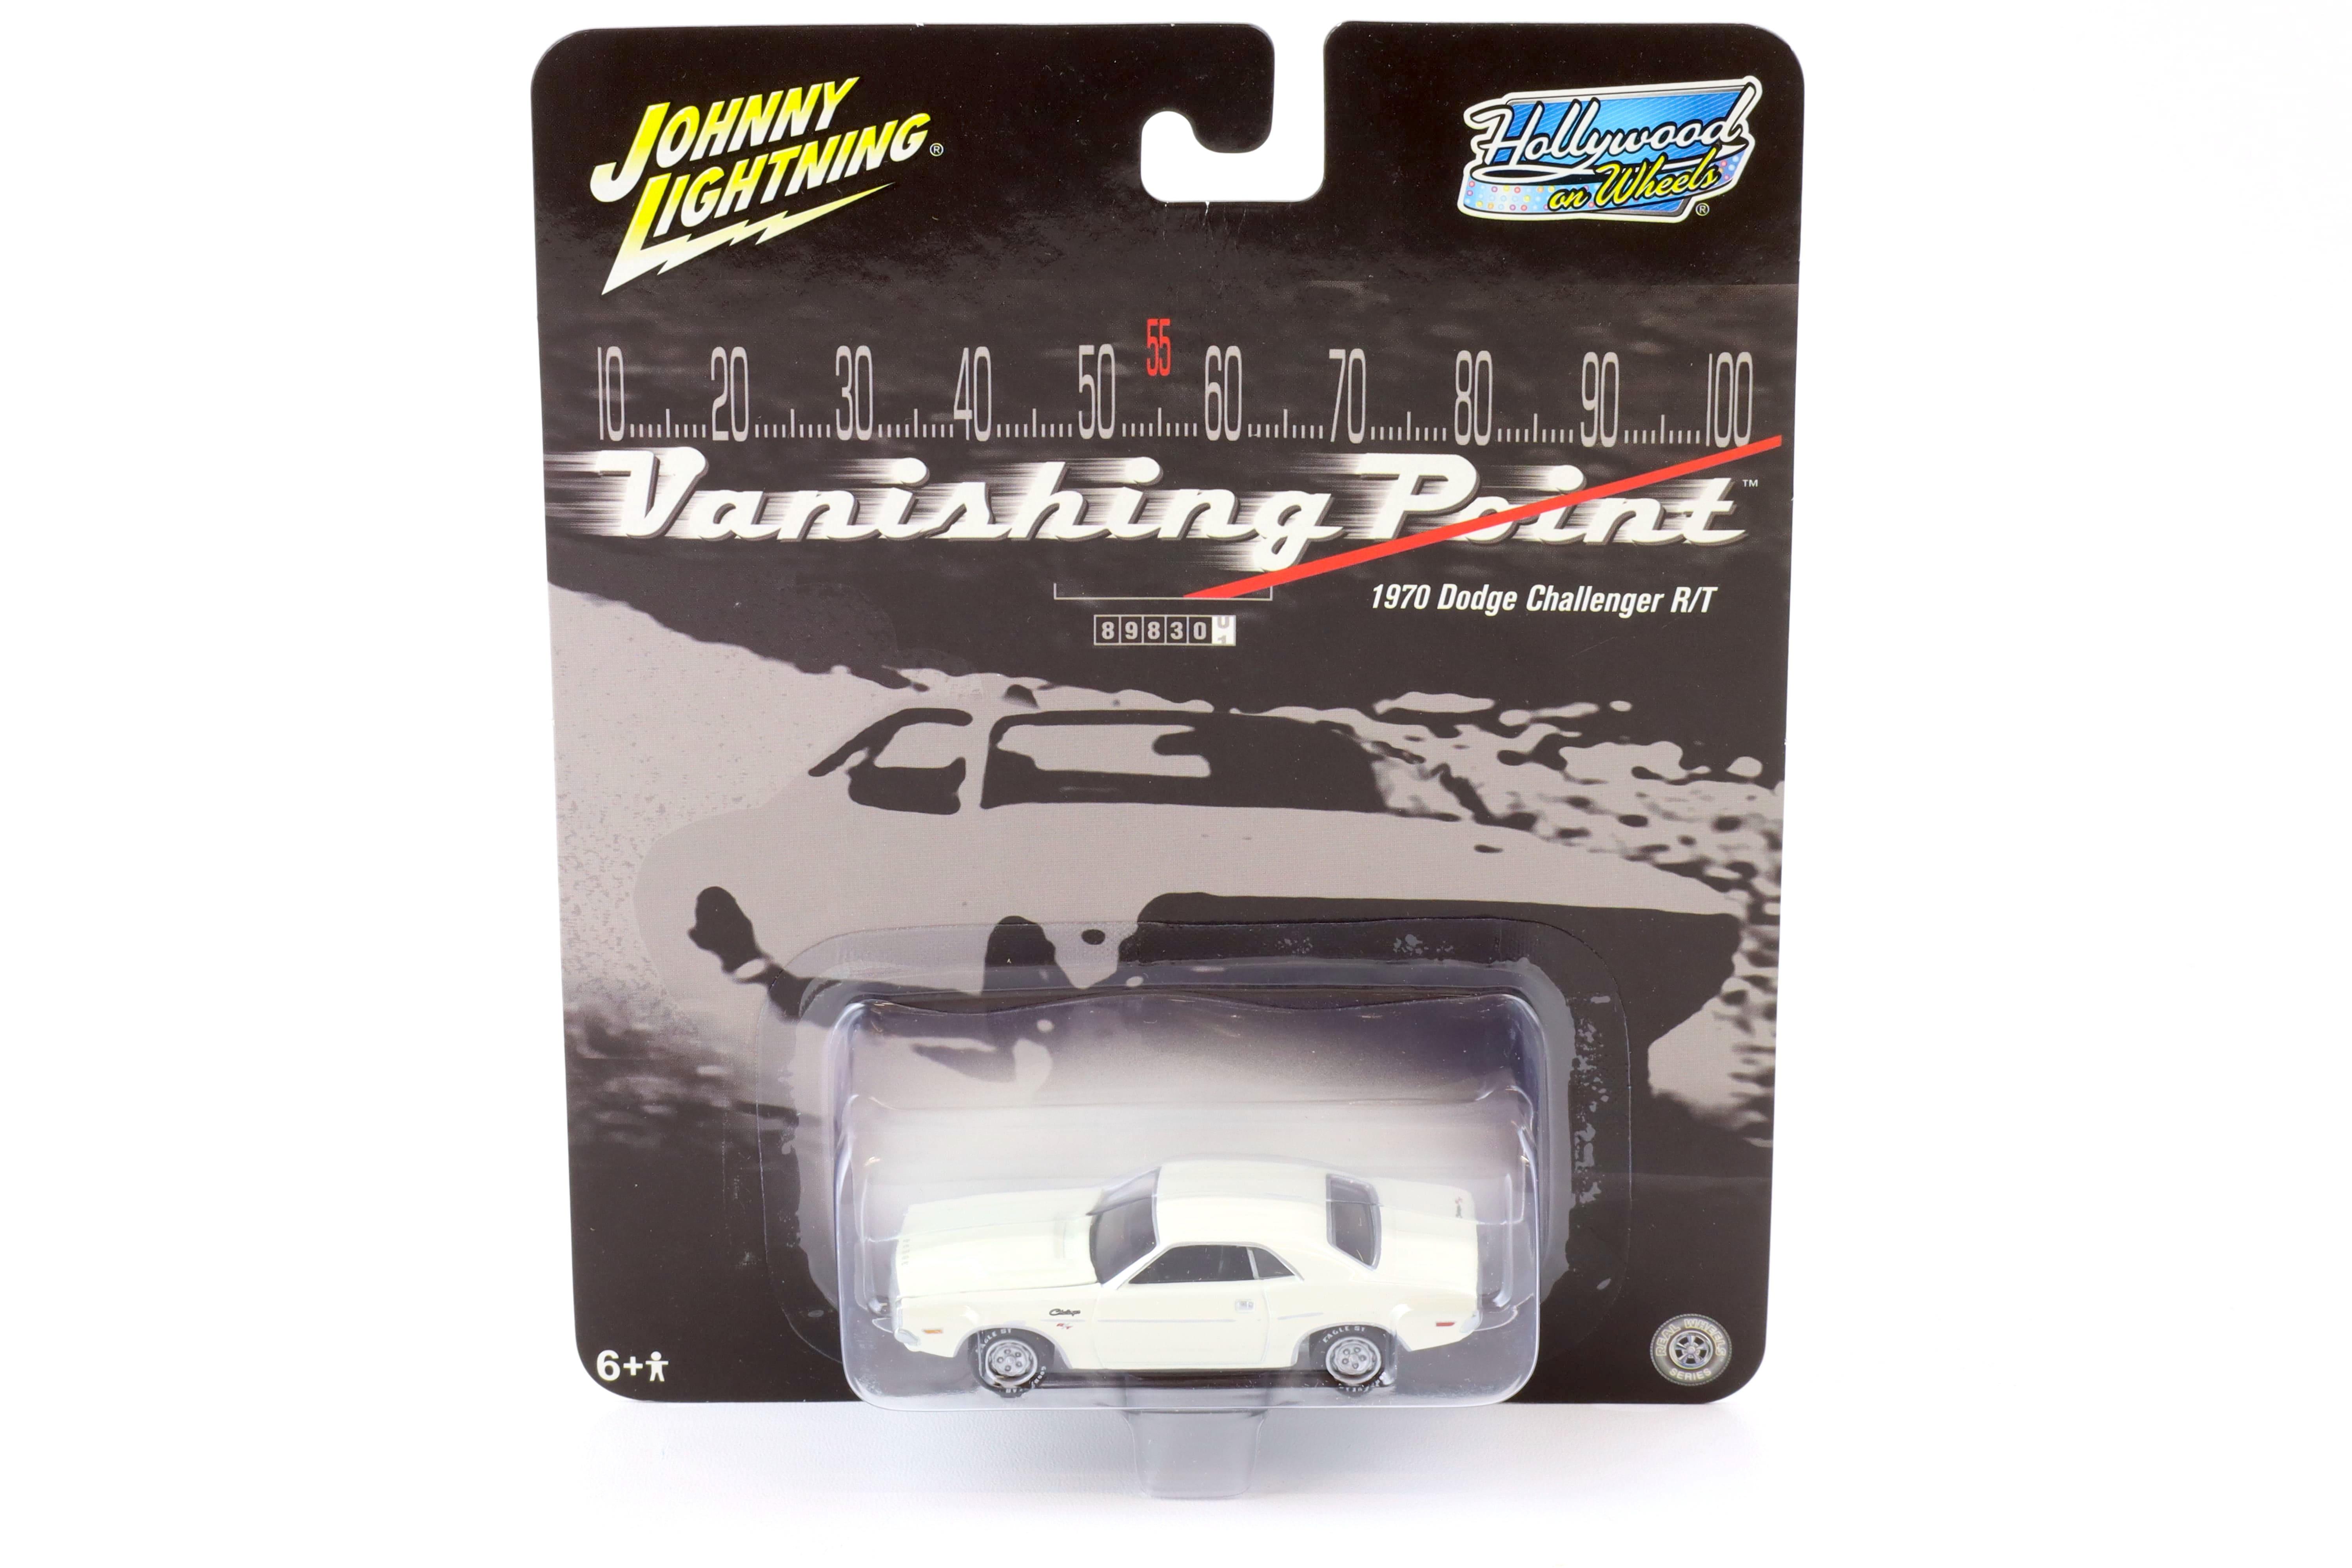 1:64 Johnny Lightning 1970 Dodge Challenger R/T white VANISHING POINT